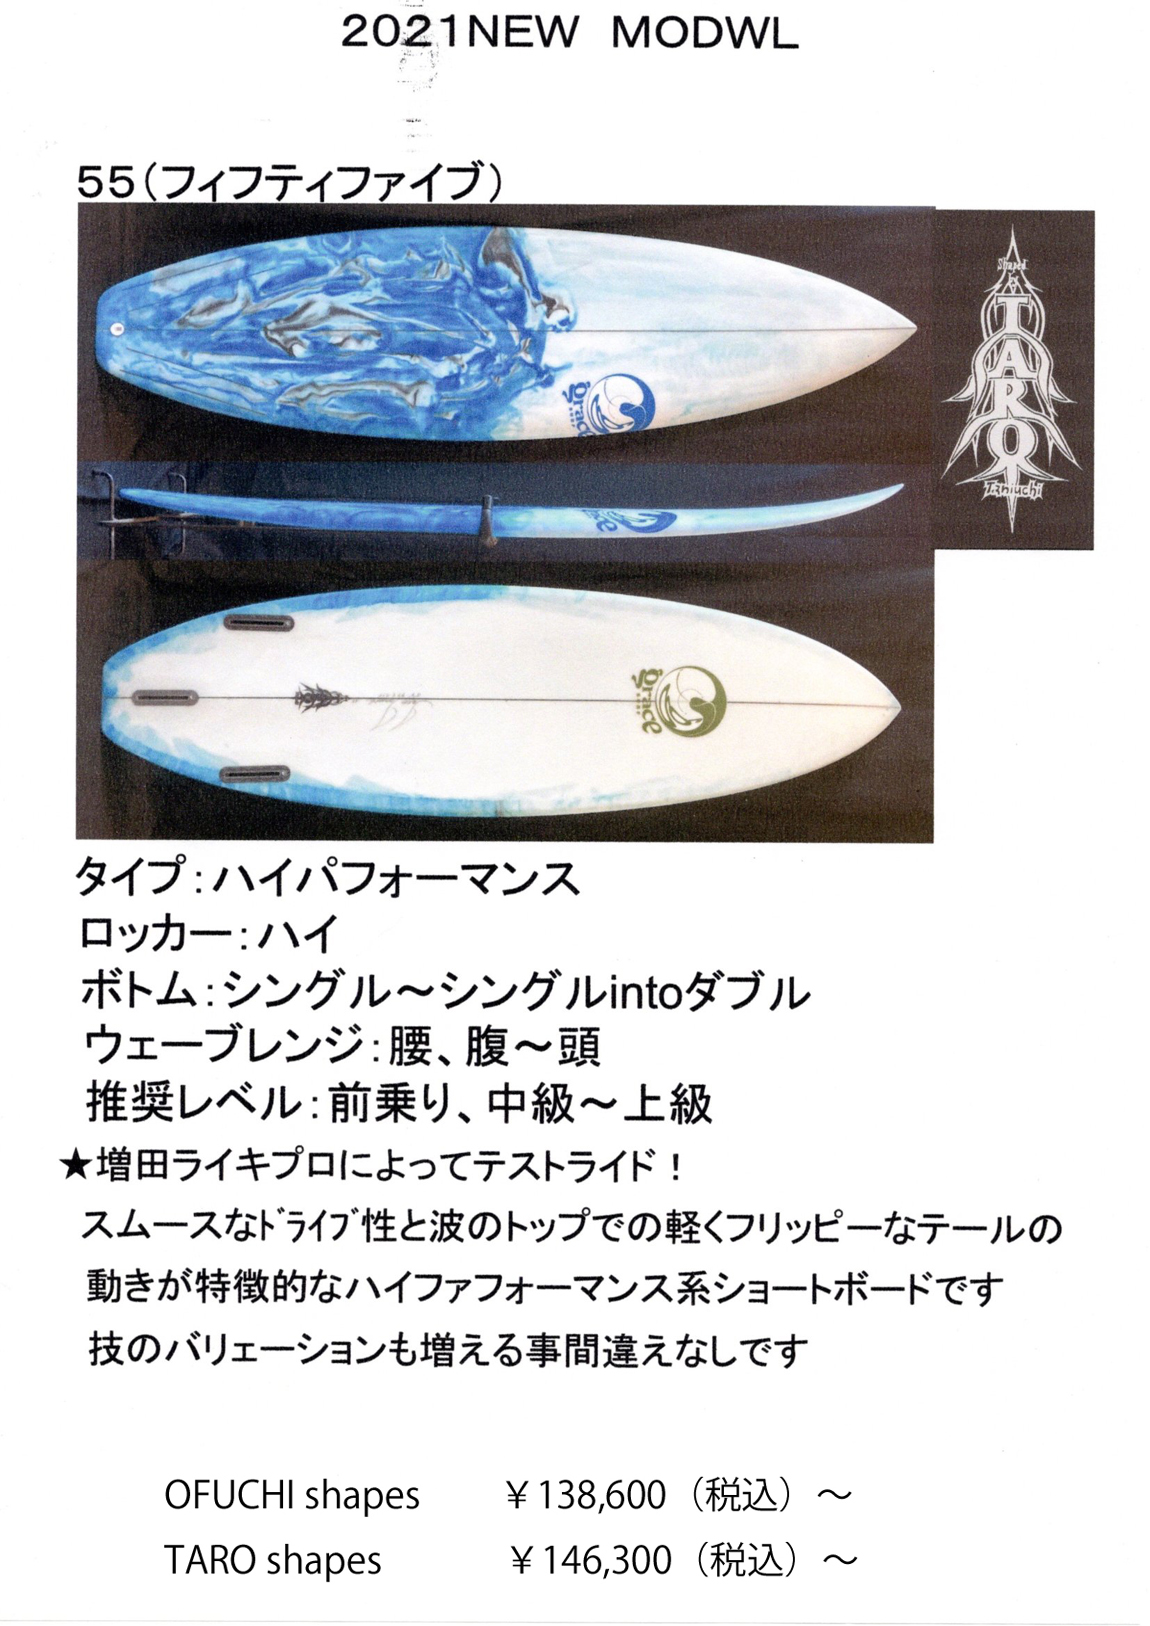 GRACE（グレイス）サーフボード2021に２モデル追加されました。 | サーフィンのことなら東京・墨田区のプロショップのアルファサーフショップへ